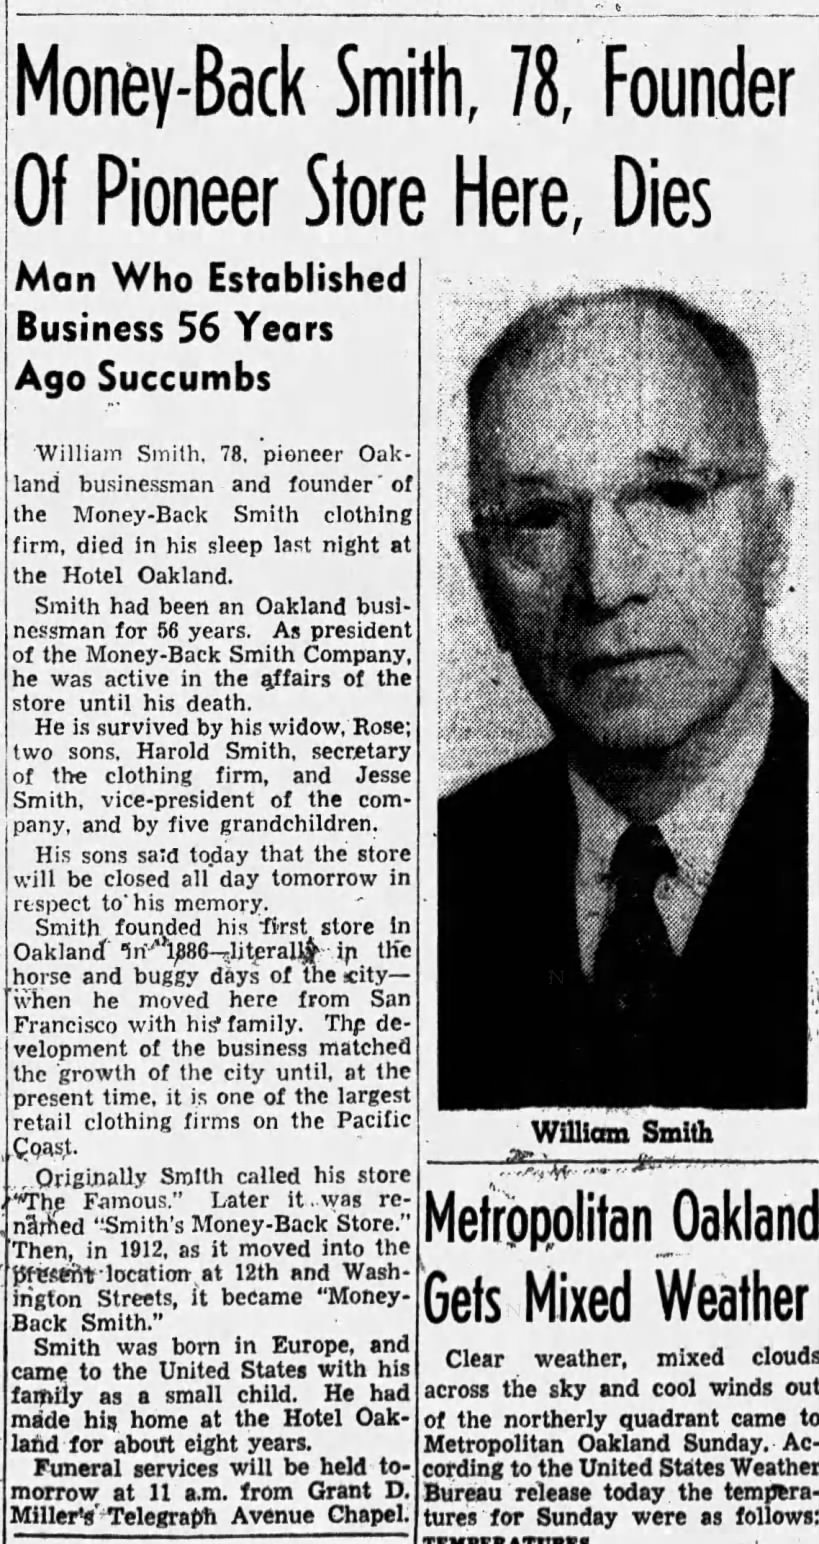 William Smith Death Notice
Oakland Tribune 29 Dec 1942